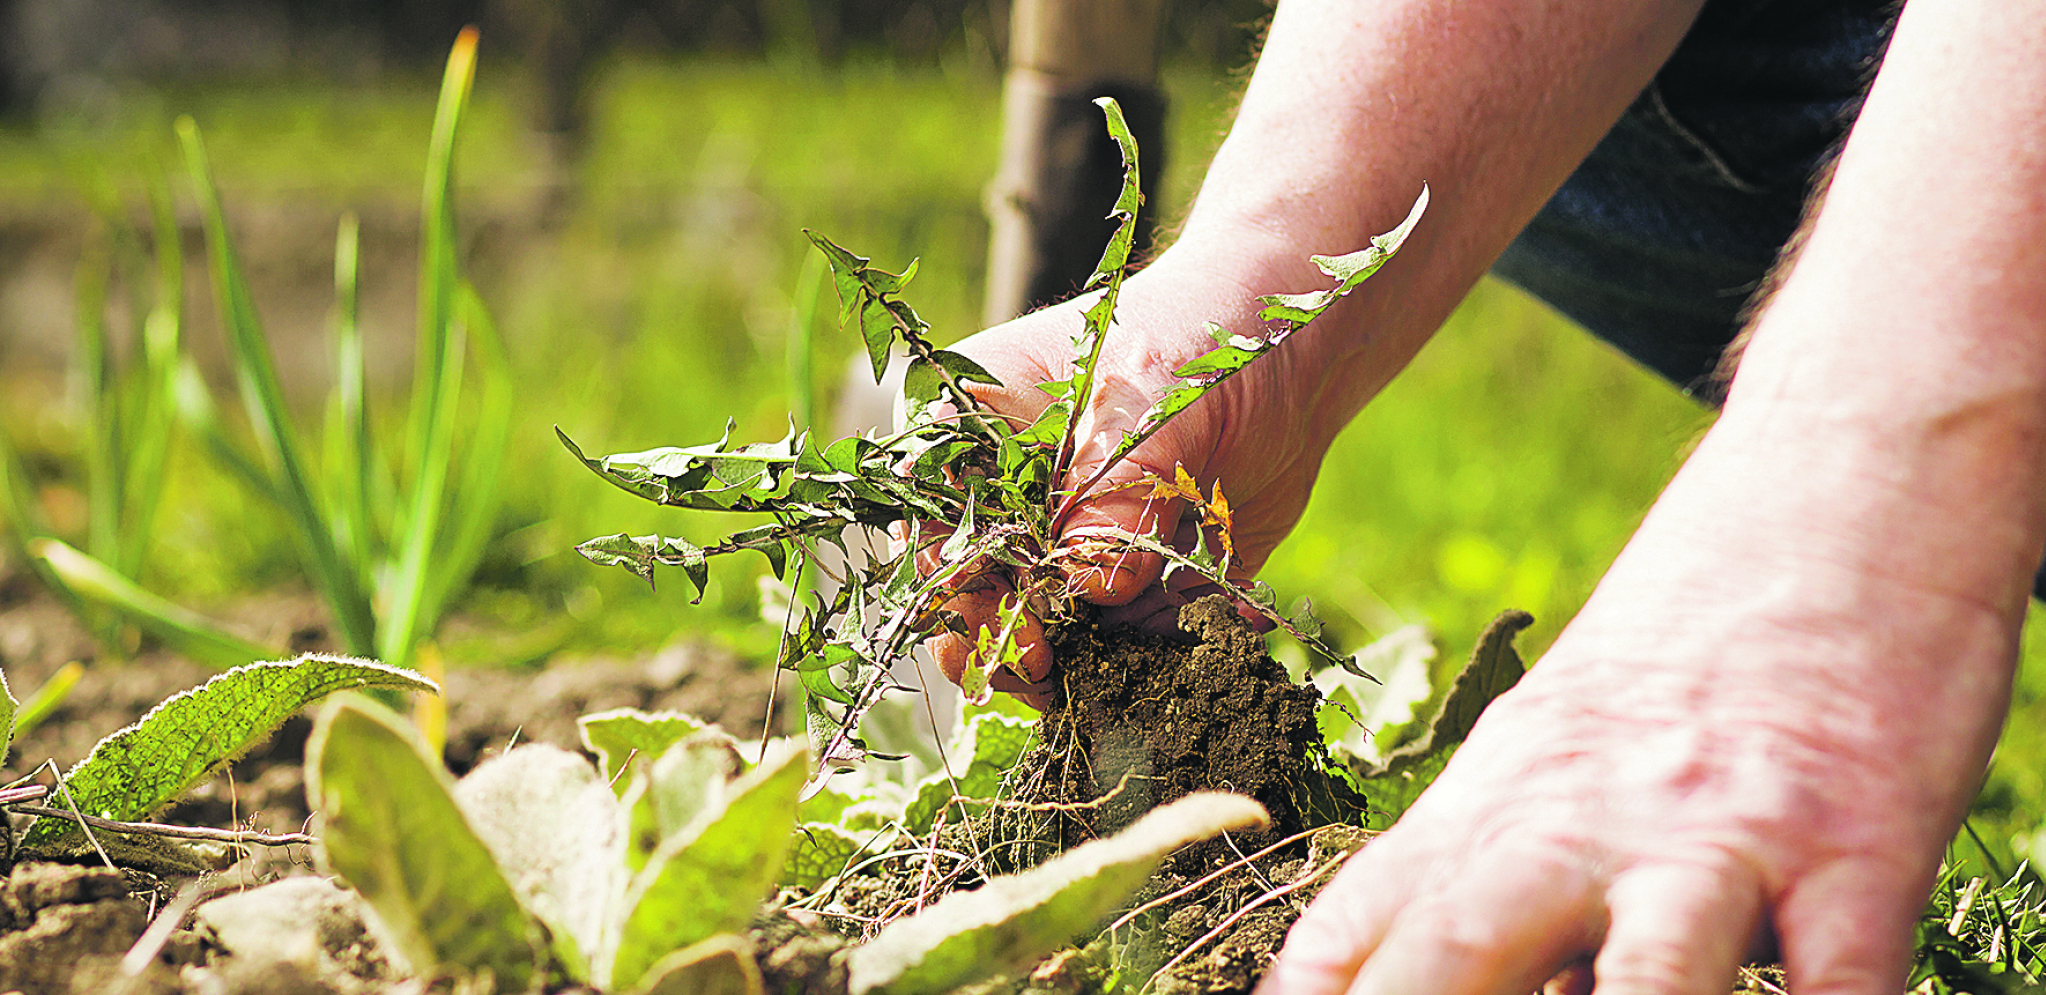 Trik koji će vam biti od koristi: Napravite sredstvo koje će uništiti korov u vašoj bašti